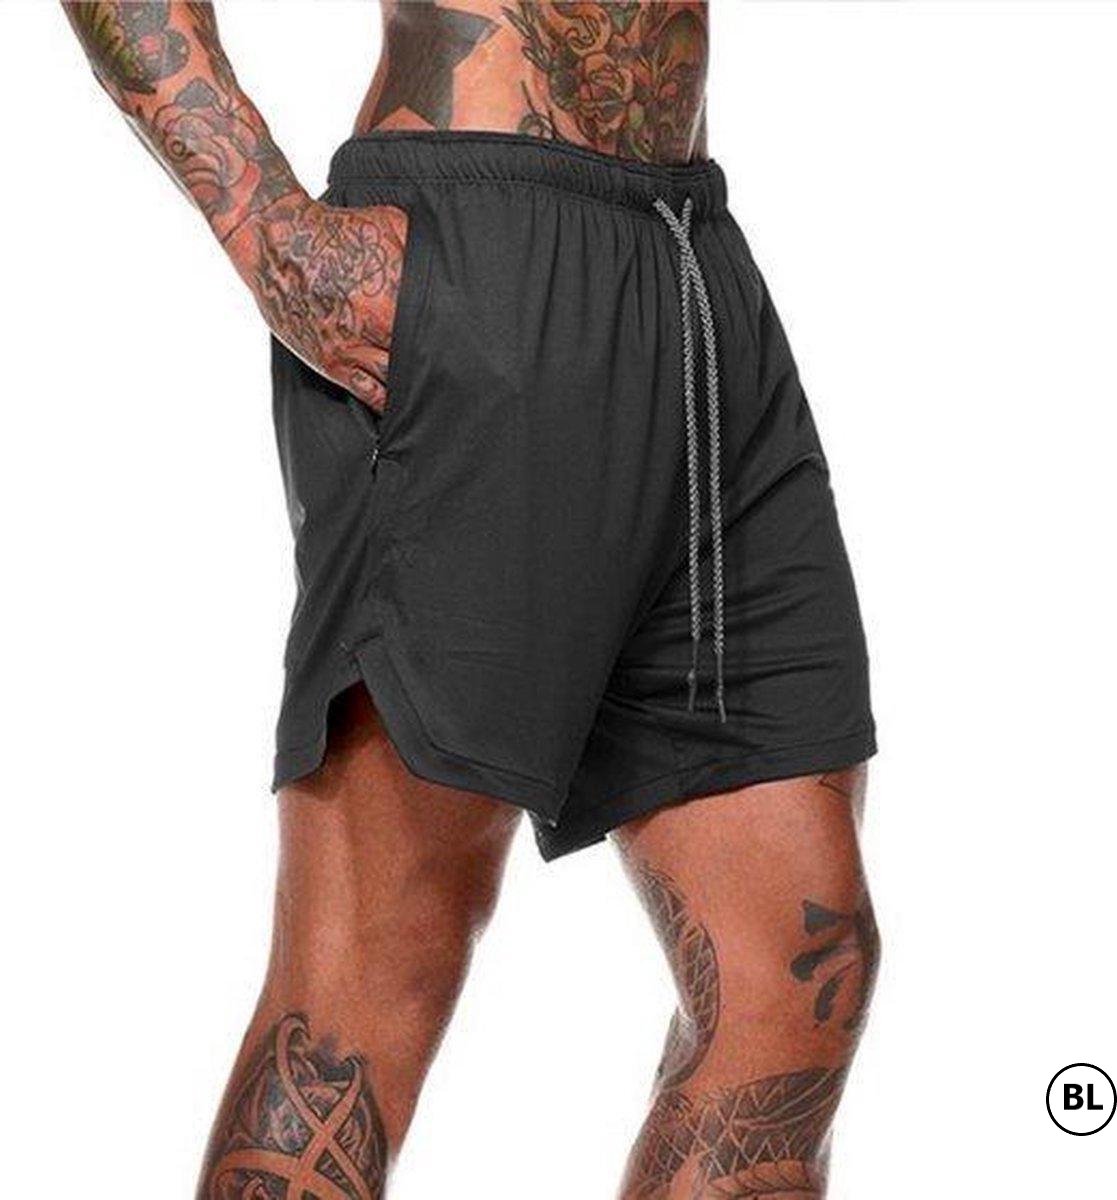 BL - Sportbroekje voor Heren - Gym broek met binnenzak voor mobiel - 2 in 1 Pocket Shorts - Running, Fitness, Sport broekje Trainingsbroek - Quick Dry - Mobiel Zak - ( Zwart - Maat L ))